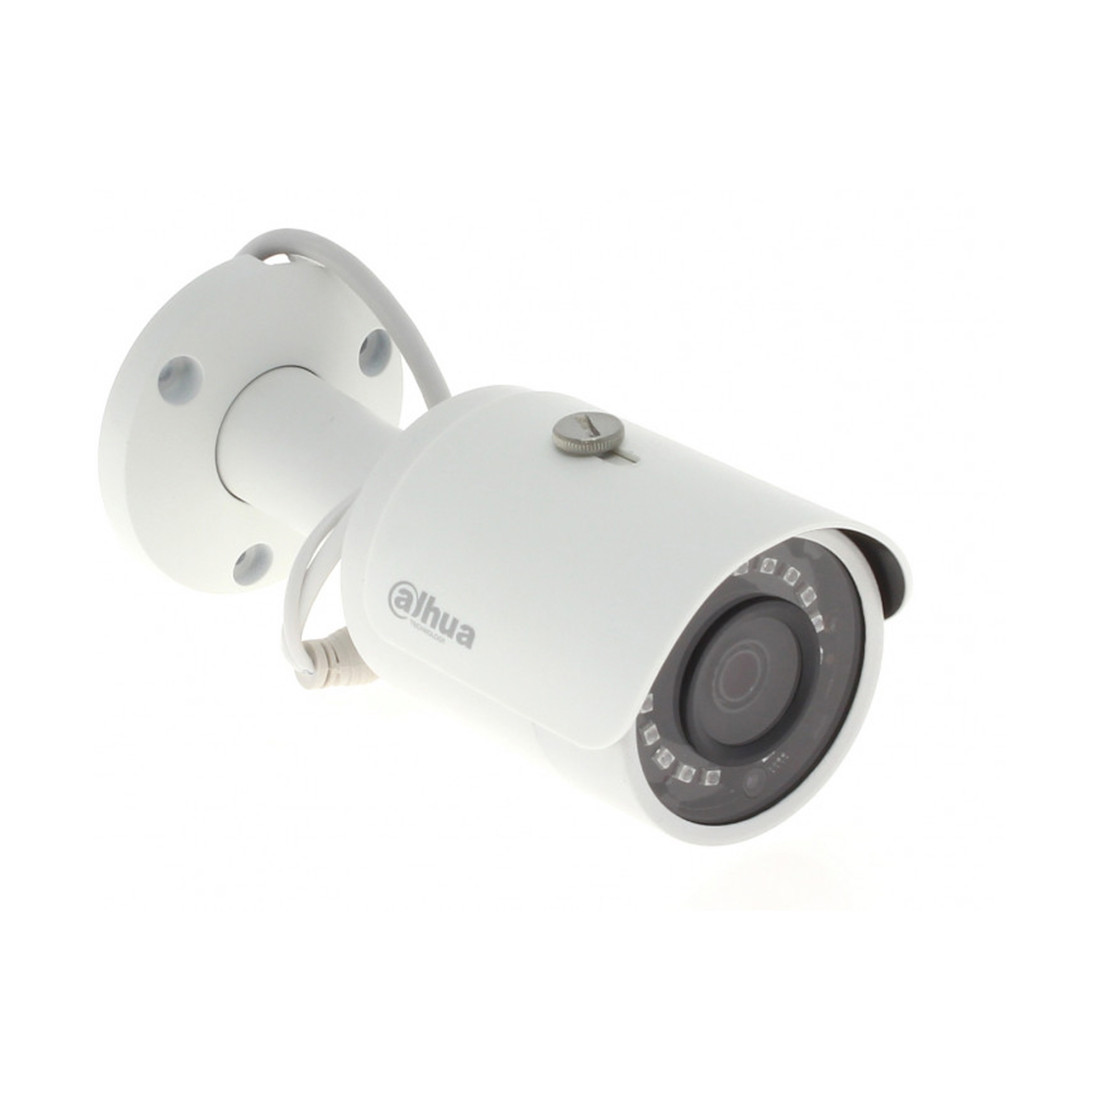 Dahua DH-IPC-HFW1431SP-0280B видеокамера цилиндрическая 4.0 МП, PoE, до 20 к/c